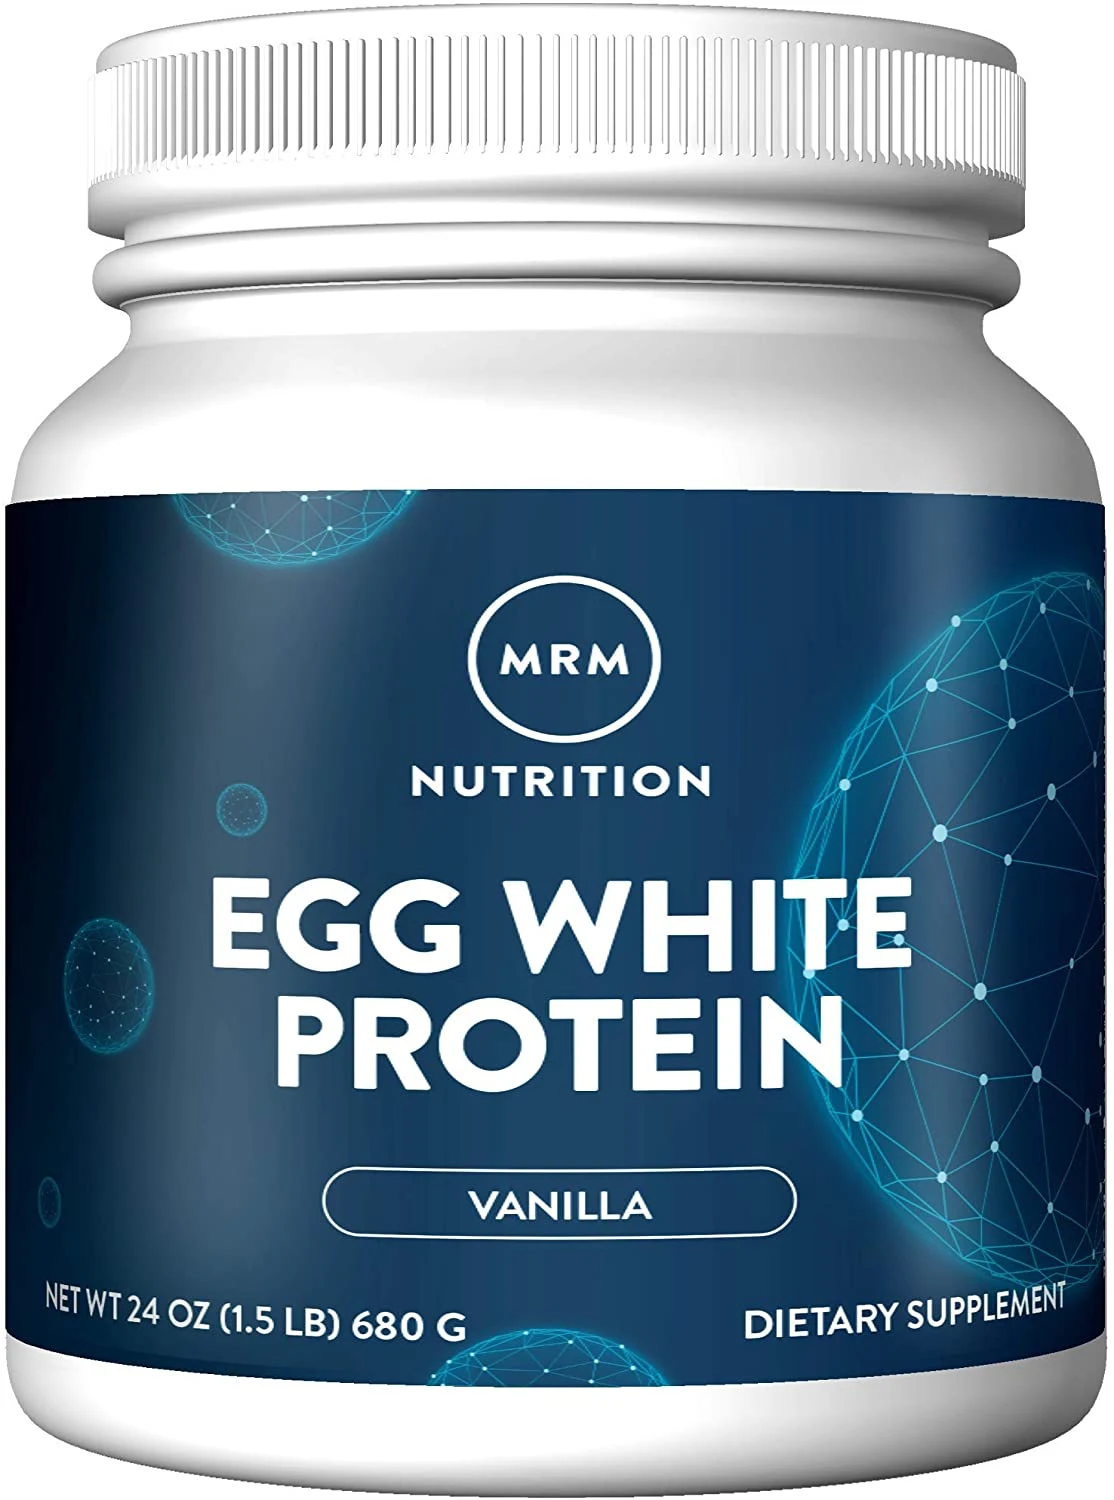 MRM Natural Egg White Protein Powder